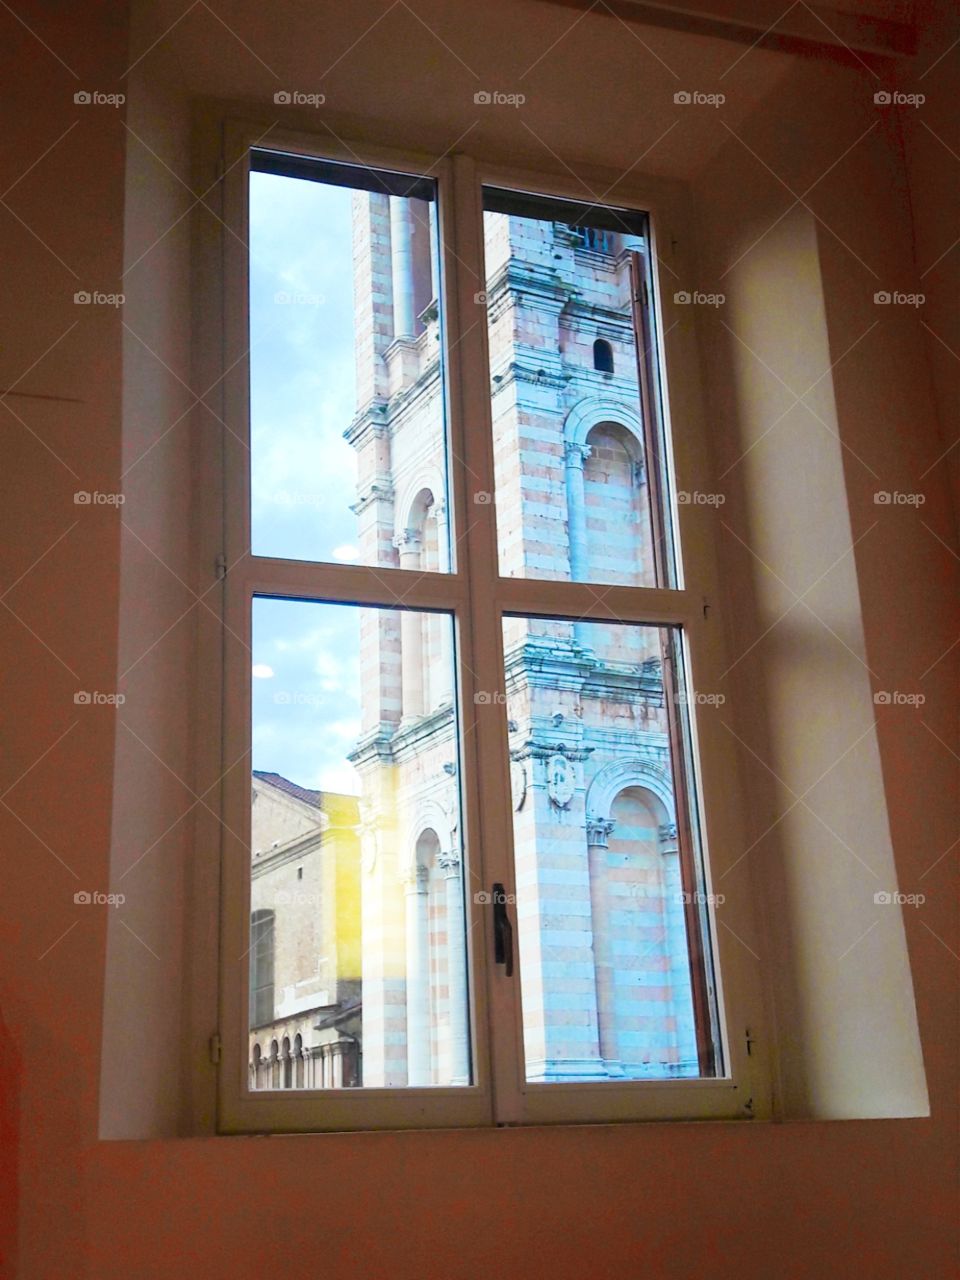 Ferrara in the window